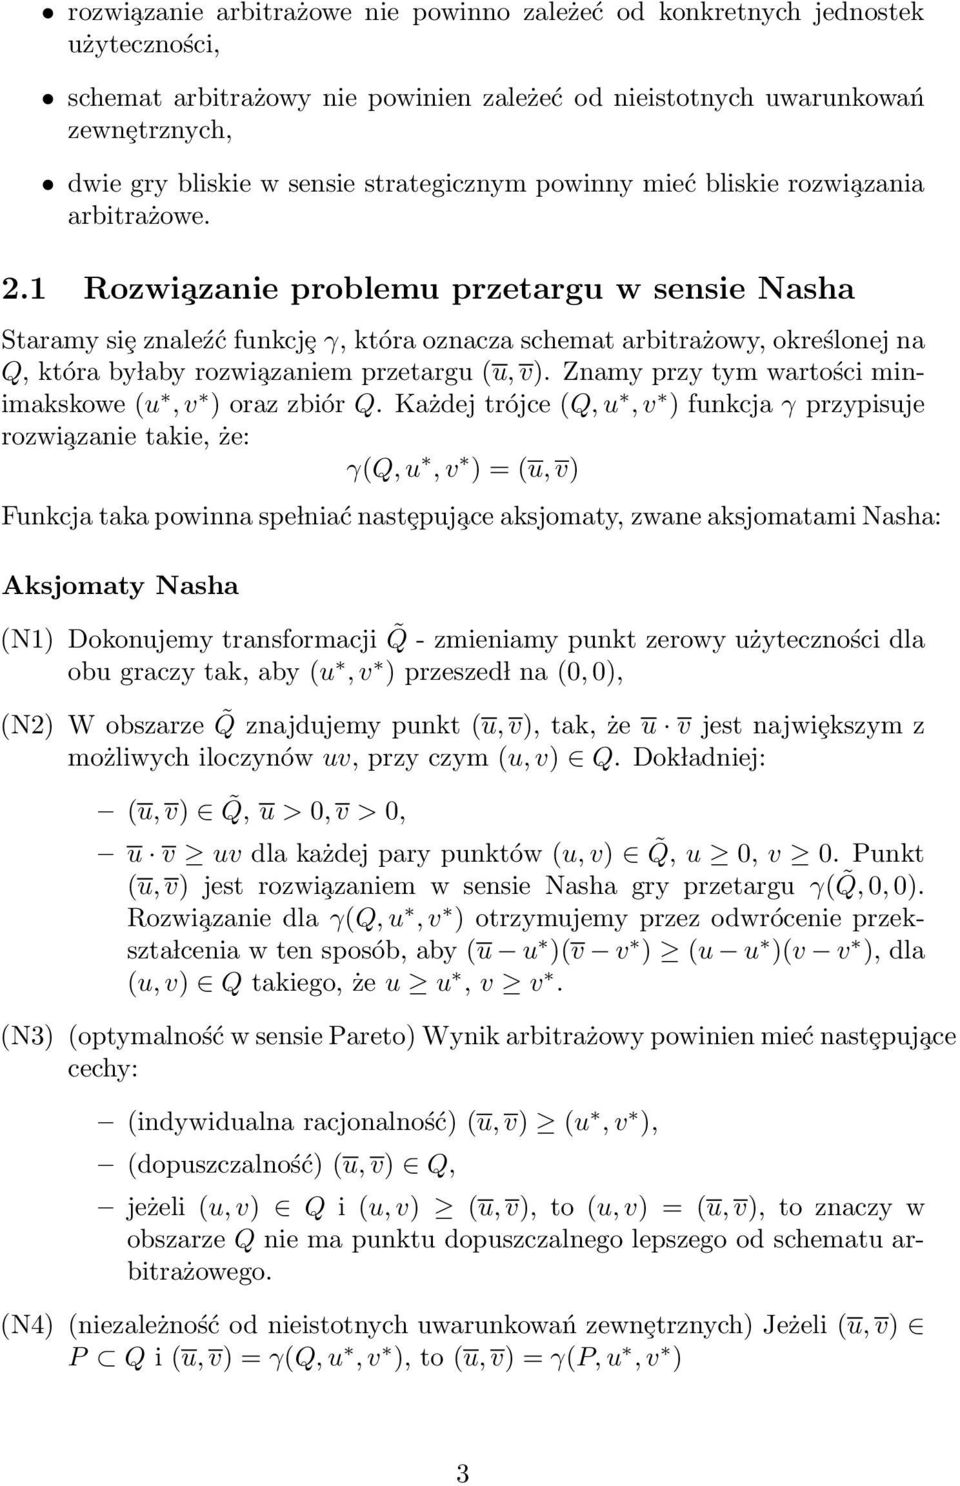 1 Rozwi azanie problemu przetargu w sensie Nasha Staramy siȩ znaleźć funkcjȩ γ, która oznacza schemat arbitrażowy, określonej na Q, która by laby rozwi azaniem przetargu (u, v).